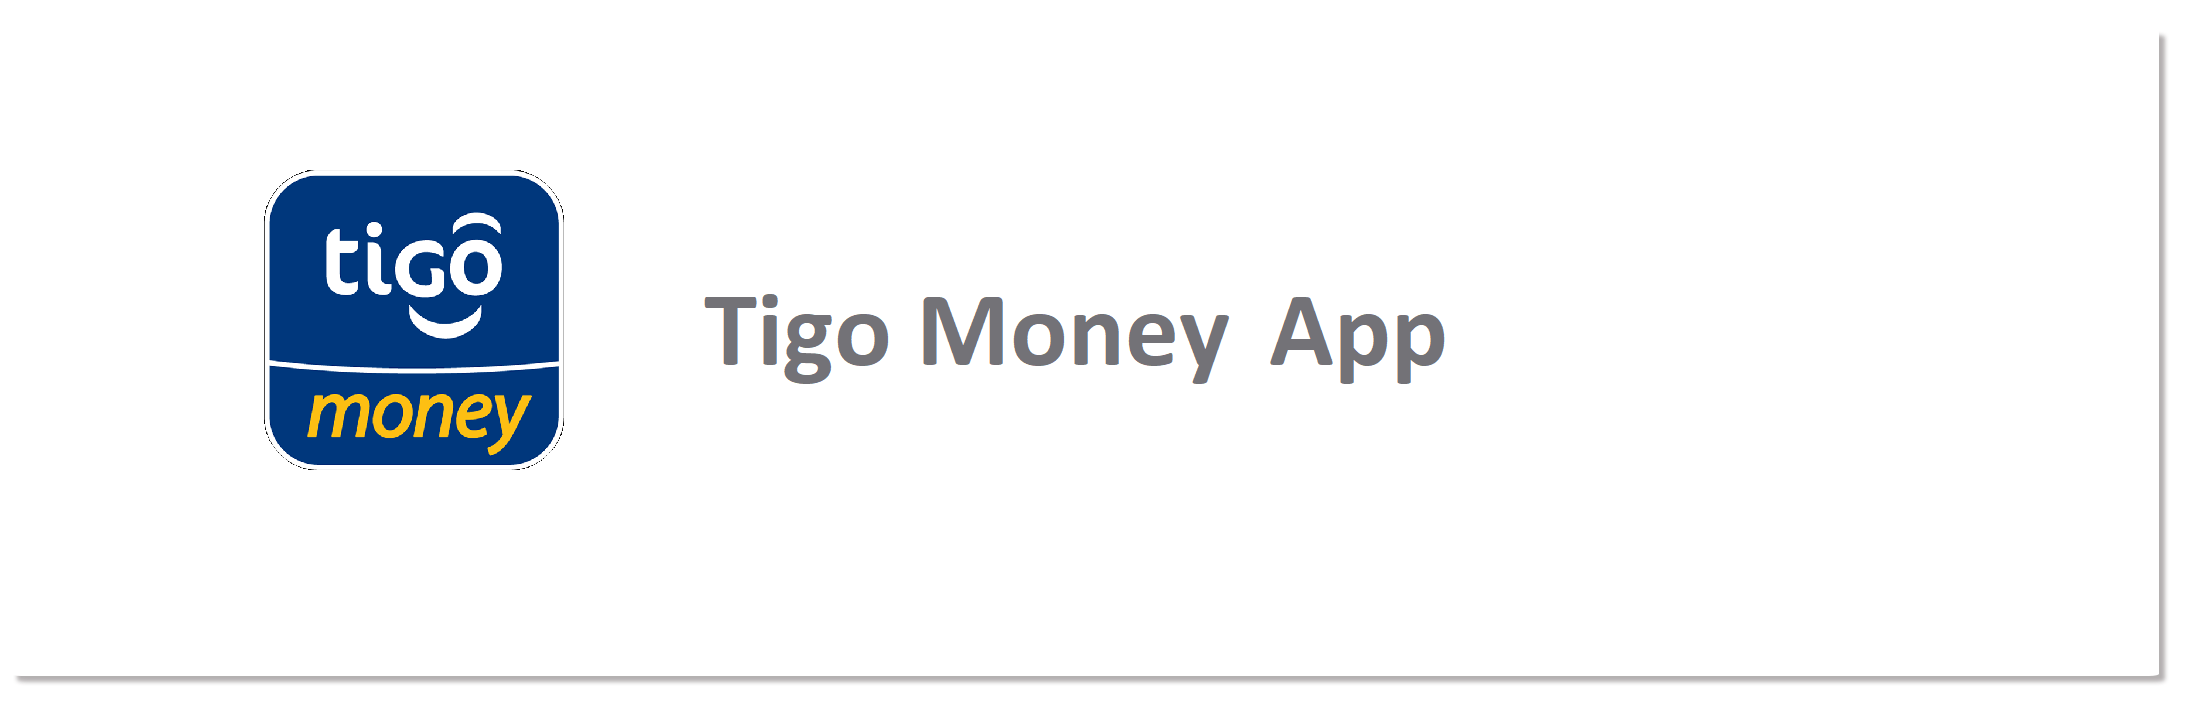 aw-compra paquetigo App Tigo Money.png